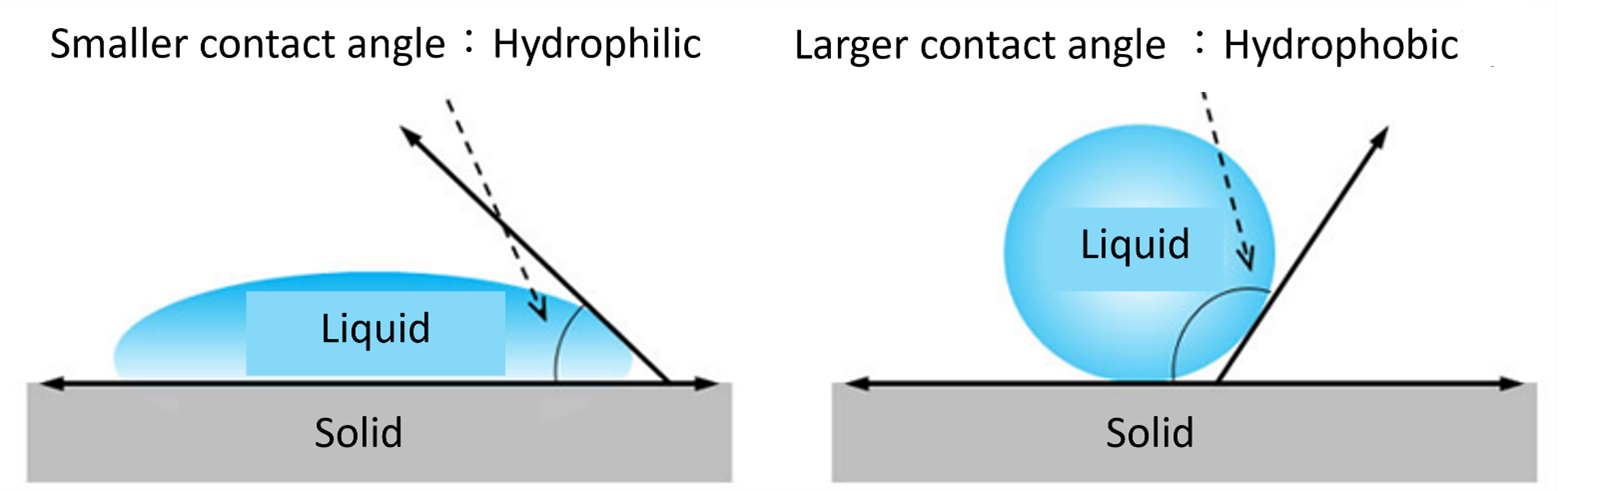 hydrophobic coating